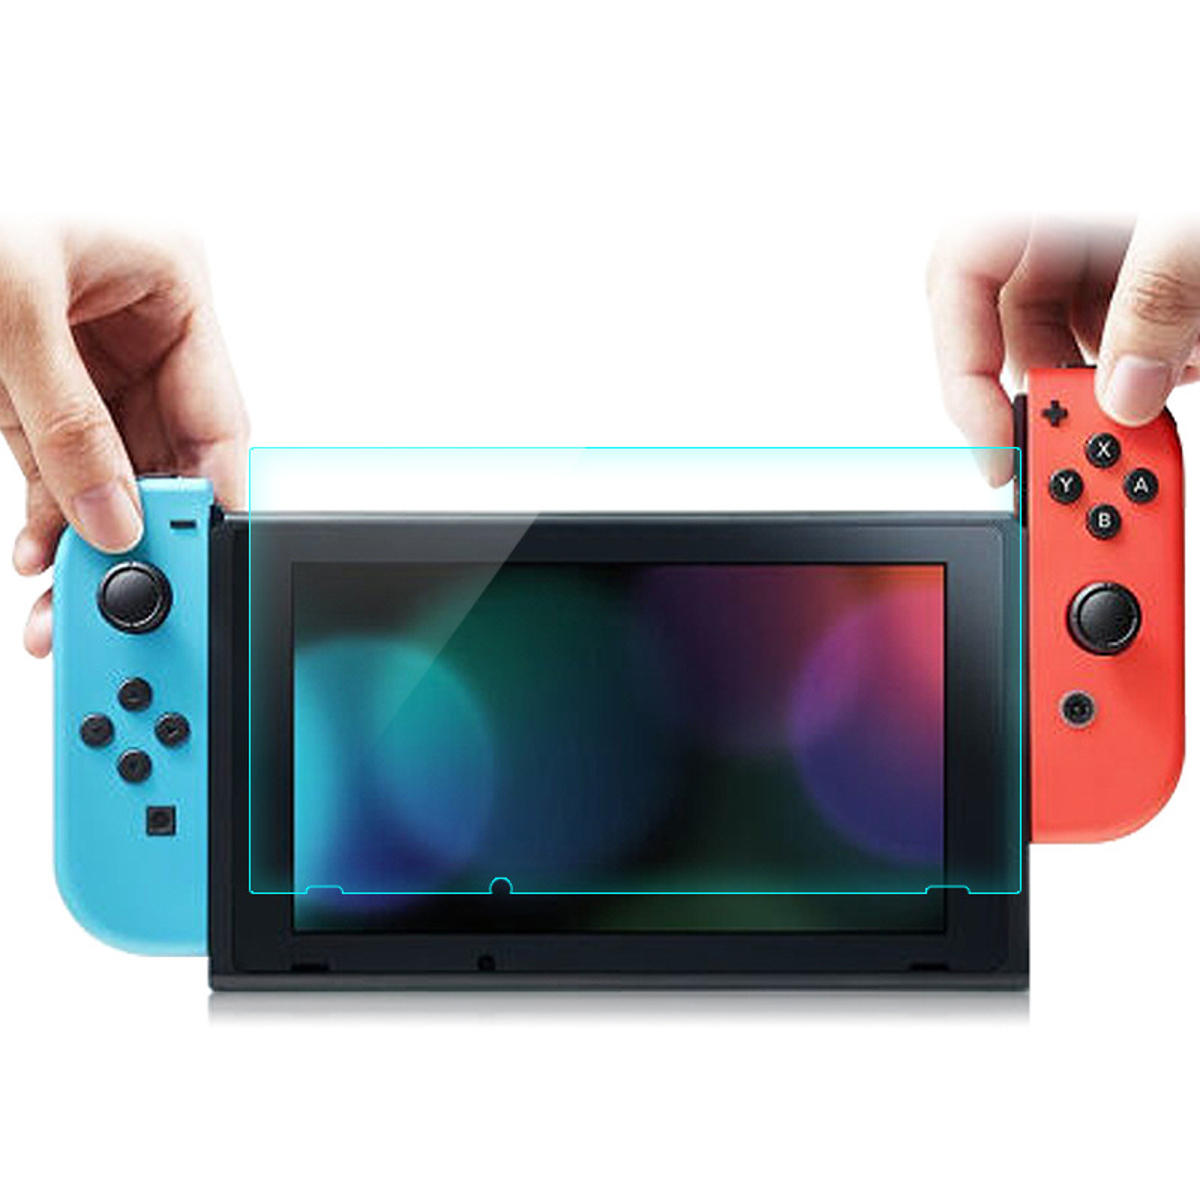 

2 в 1 9H 2.5D Изогнутая защитная пленка для экрана Закаленное стекло для игровой приставки Nintendo Switch